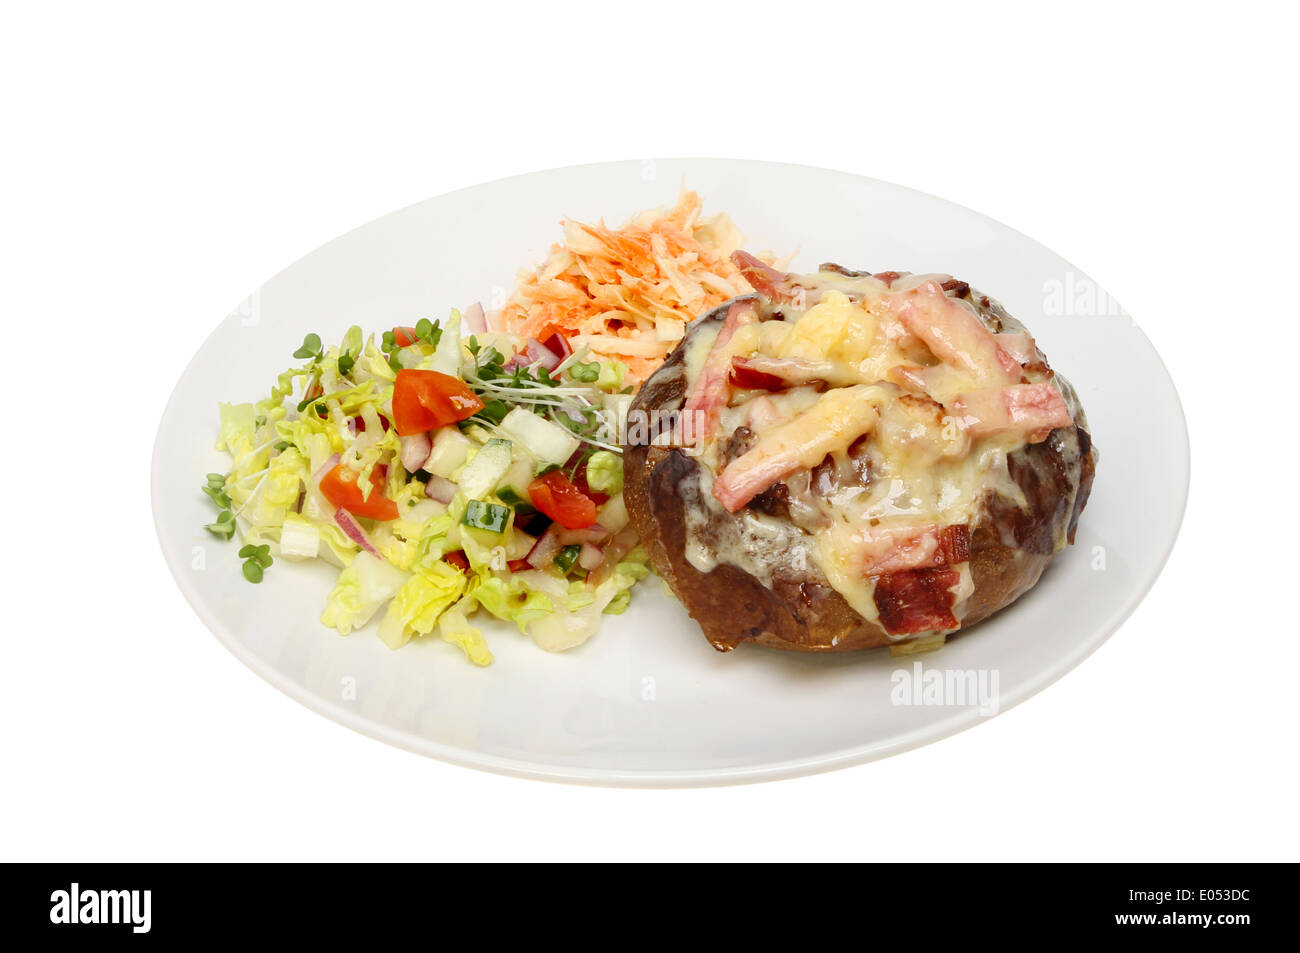 De fromage et de bacon, pomme de terre au four avec de la salade sur une assiette blanche contre isolés Banque D'Images